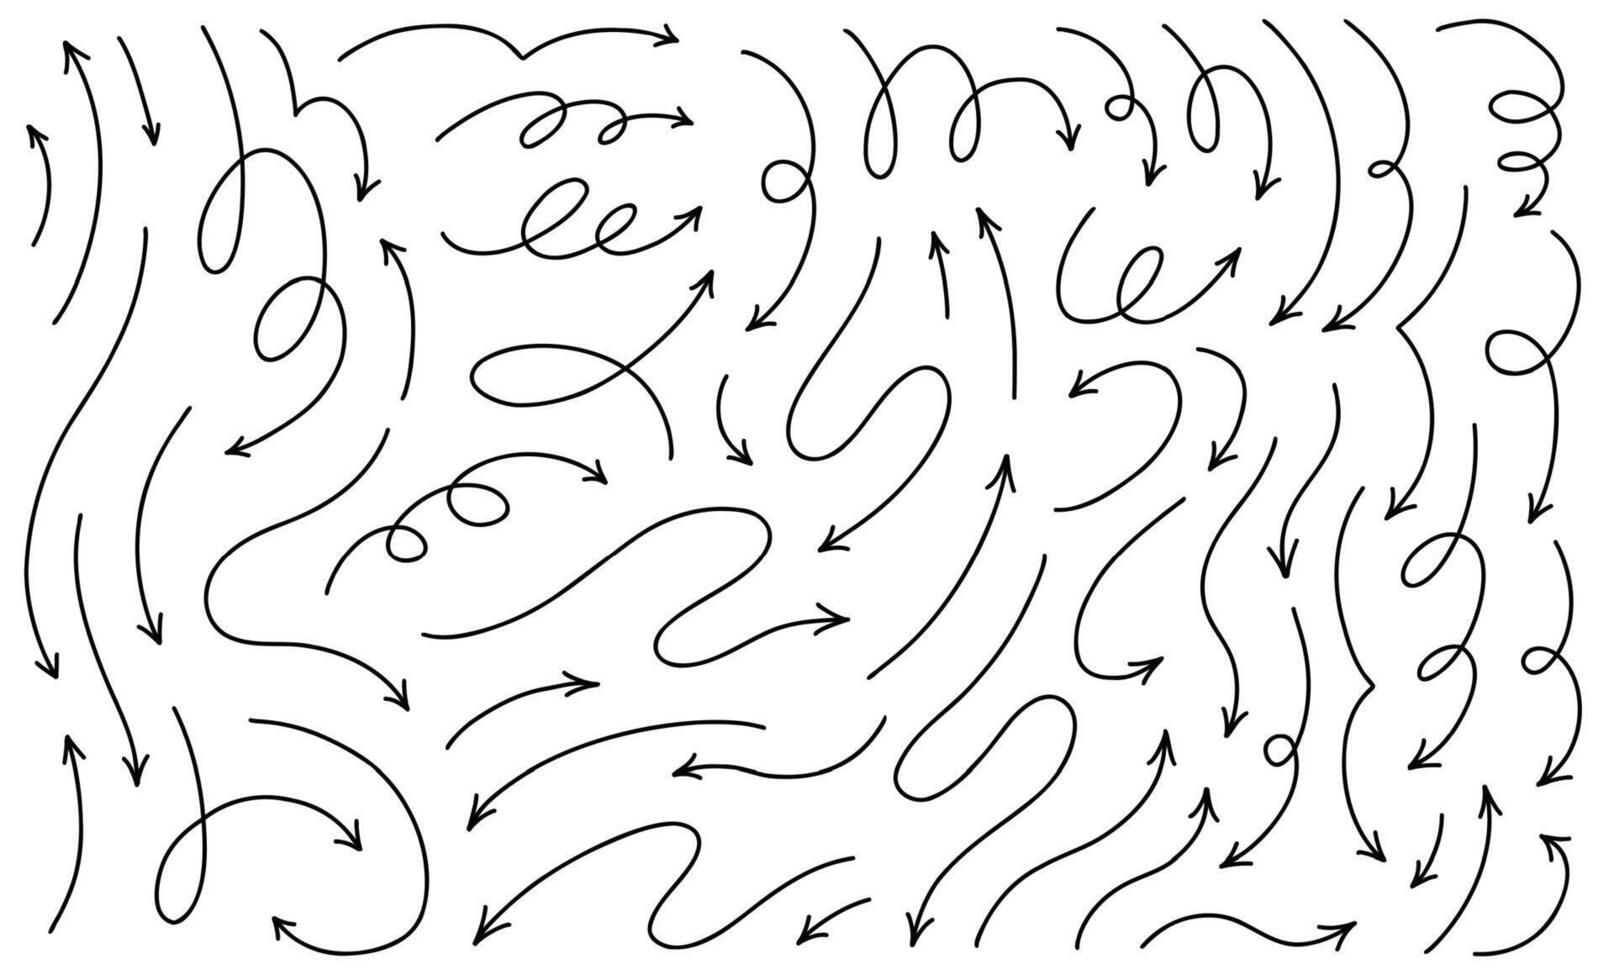 Hand gezeichnet dünn Linie Pfeile Satz. groß Sammlung von Vektor Design Elemente isoliert auf Weiß Hintergrund.